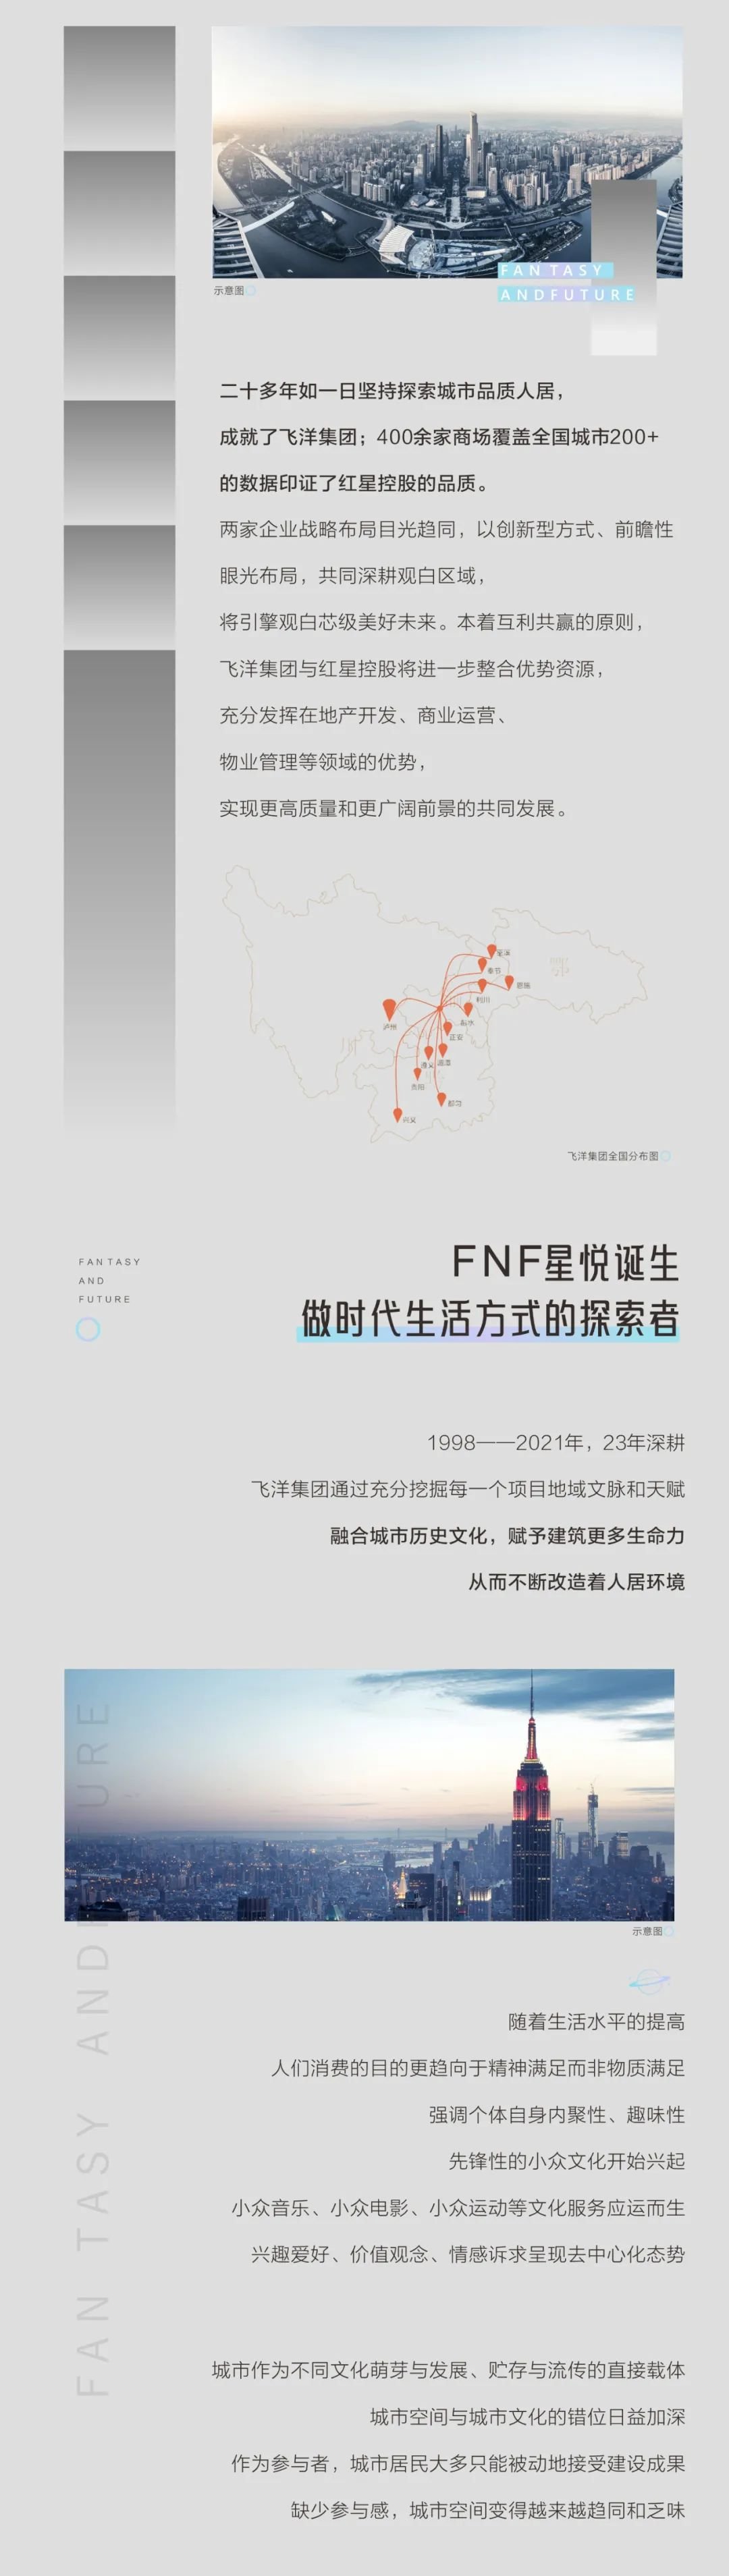 FNF星悦丨红星控股x飞洋集团，强强联手艺绘贵阳观白，引擎城市芯级美好未来